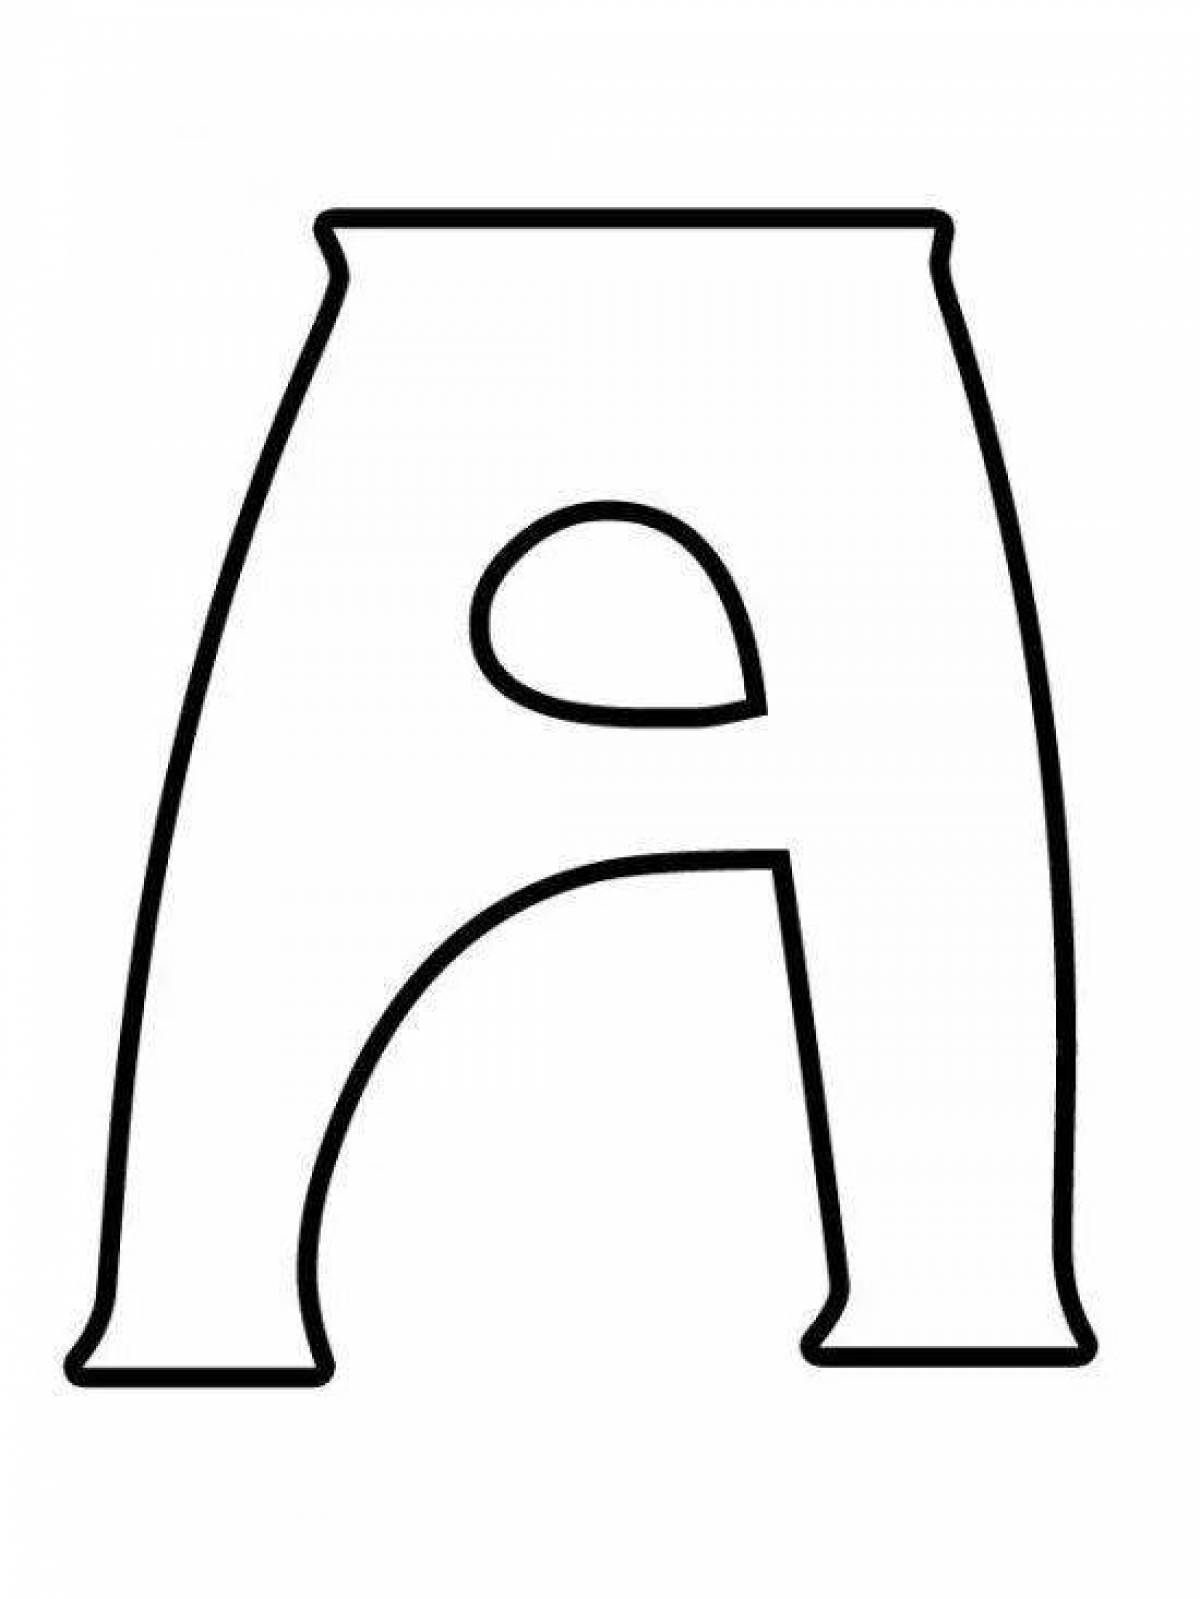 Лучистая раскраска буквы русского алфавита по отдельности